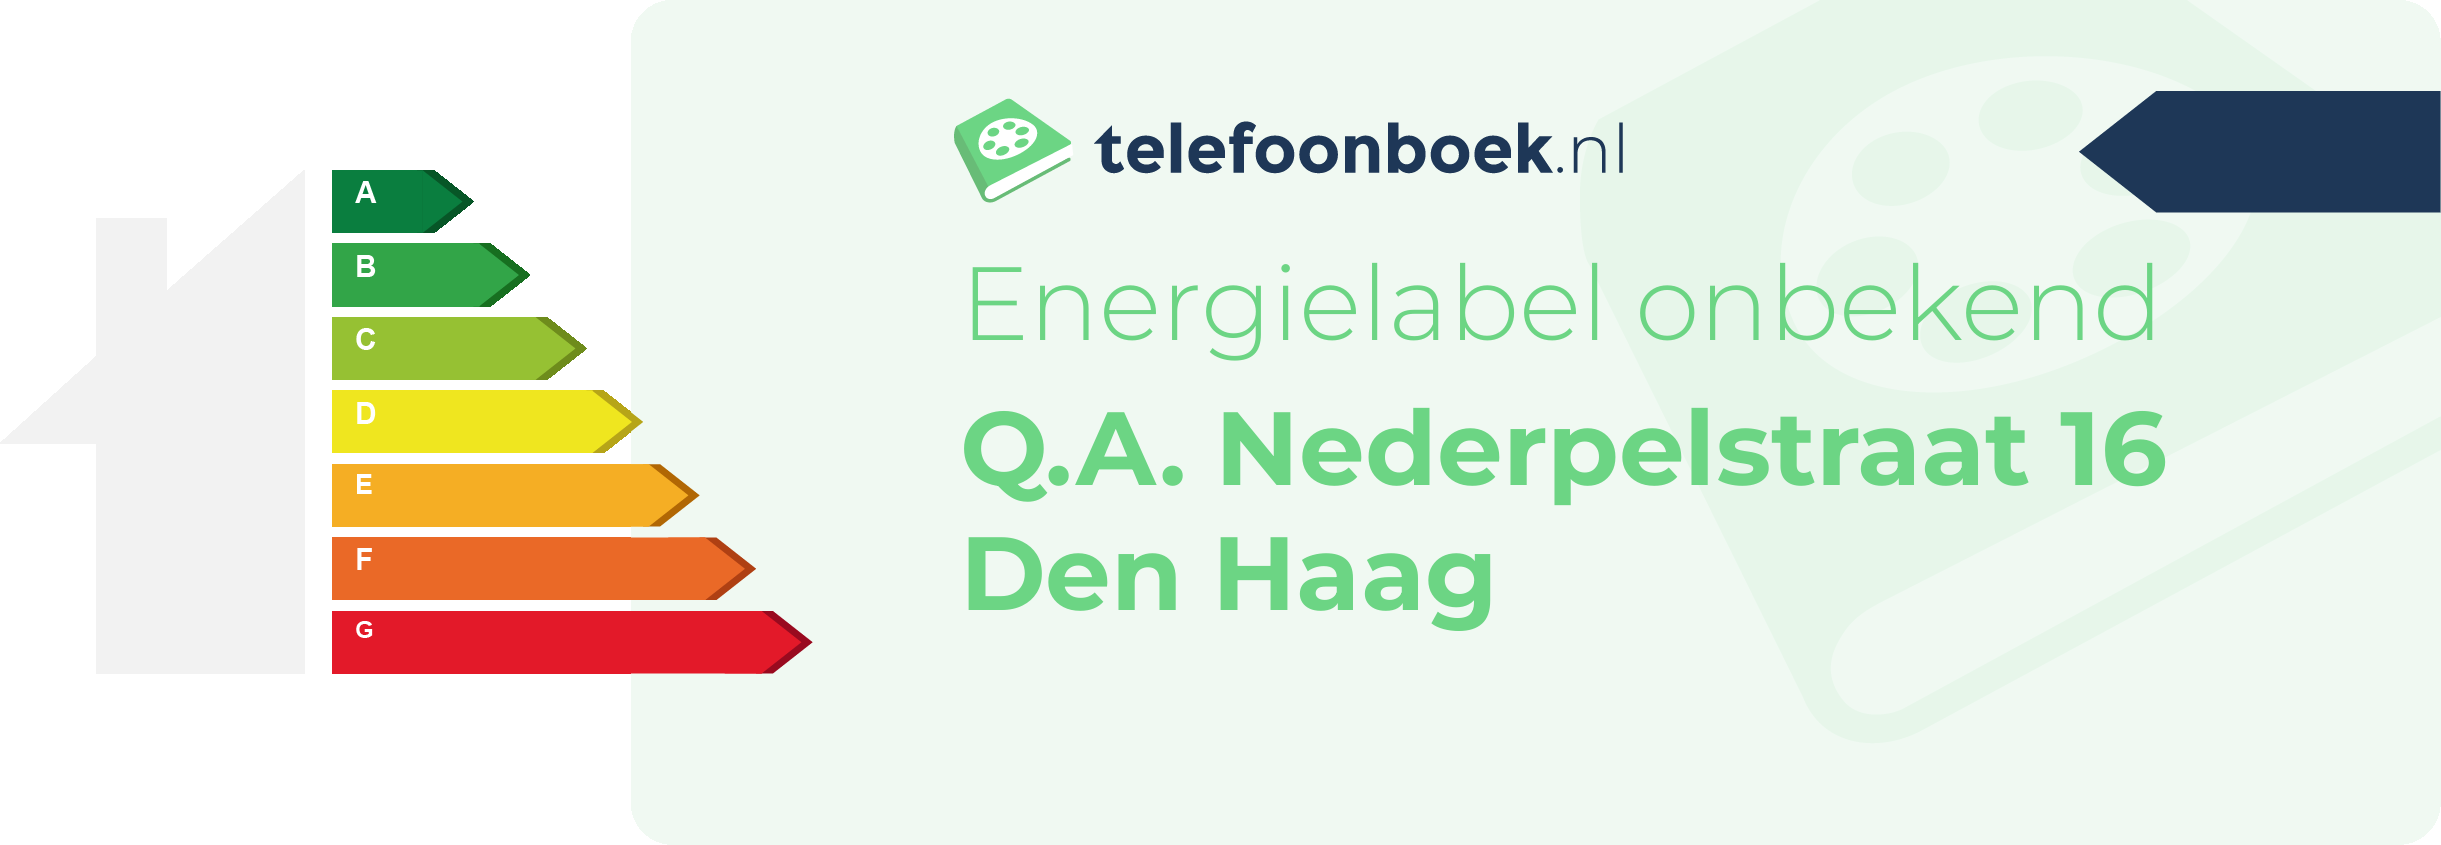 Energielabel Q.A. Nederpelstraat 16 Den Haag